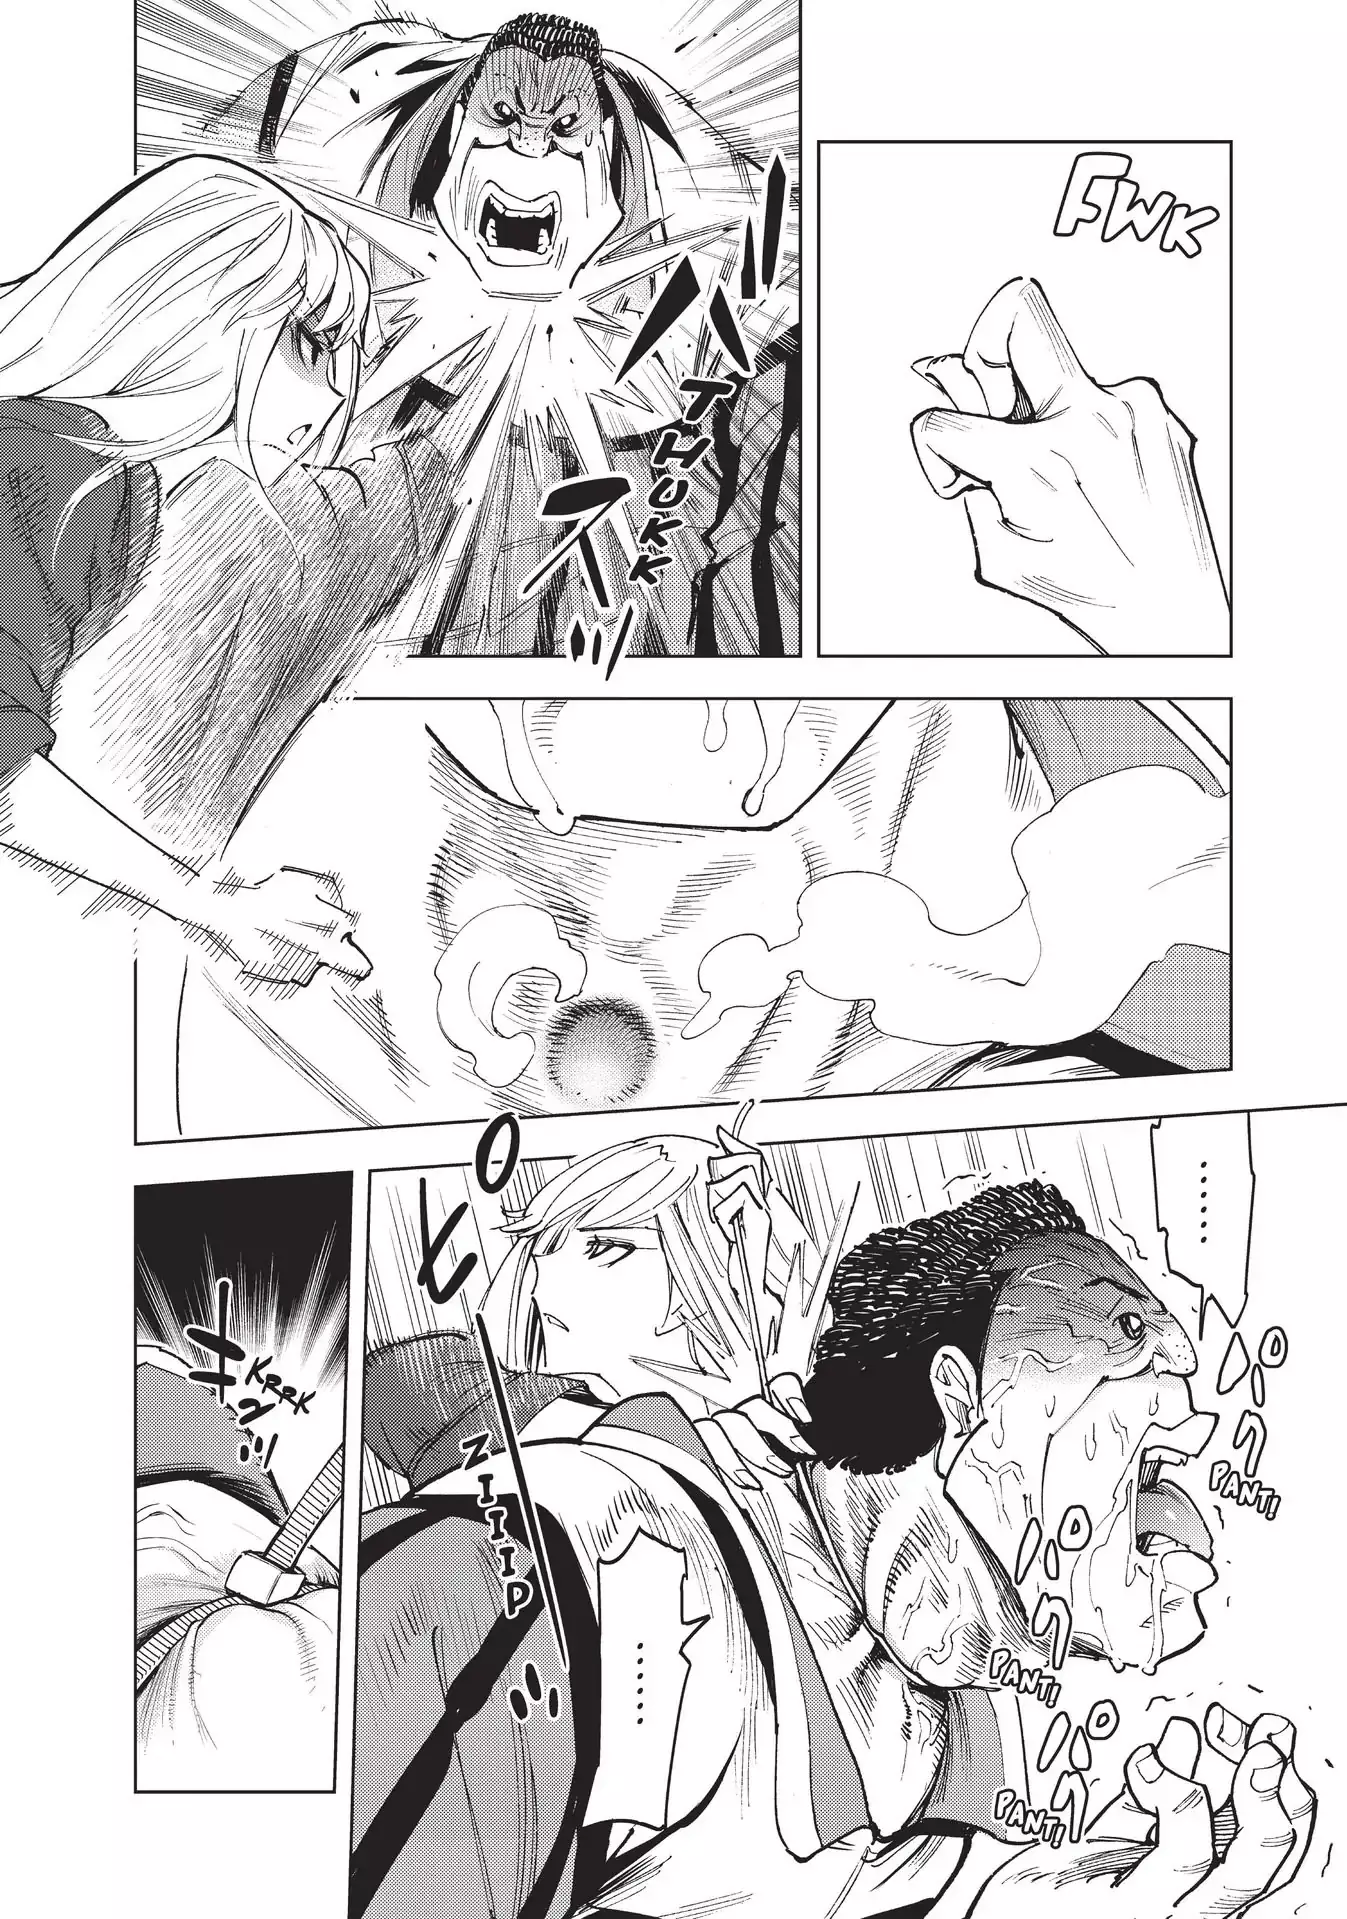 Kiruru Kill Me - 26 page 8-72c57019